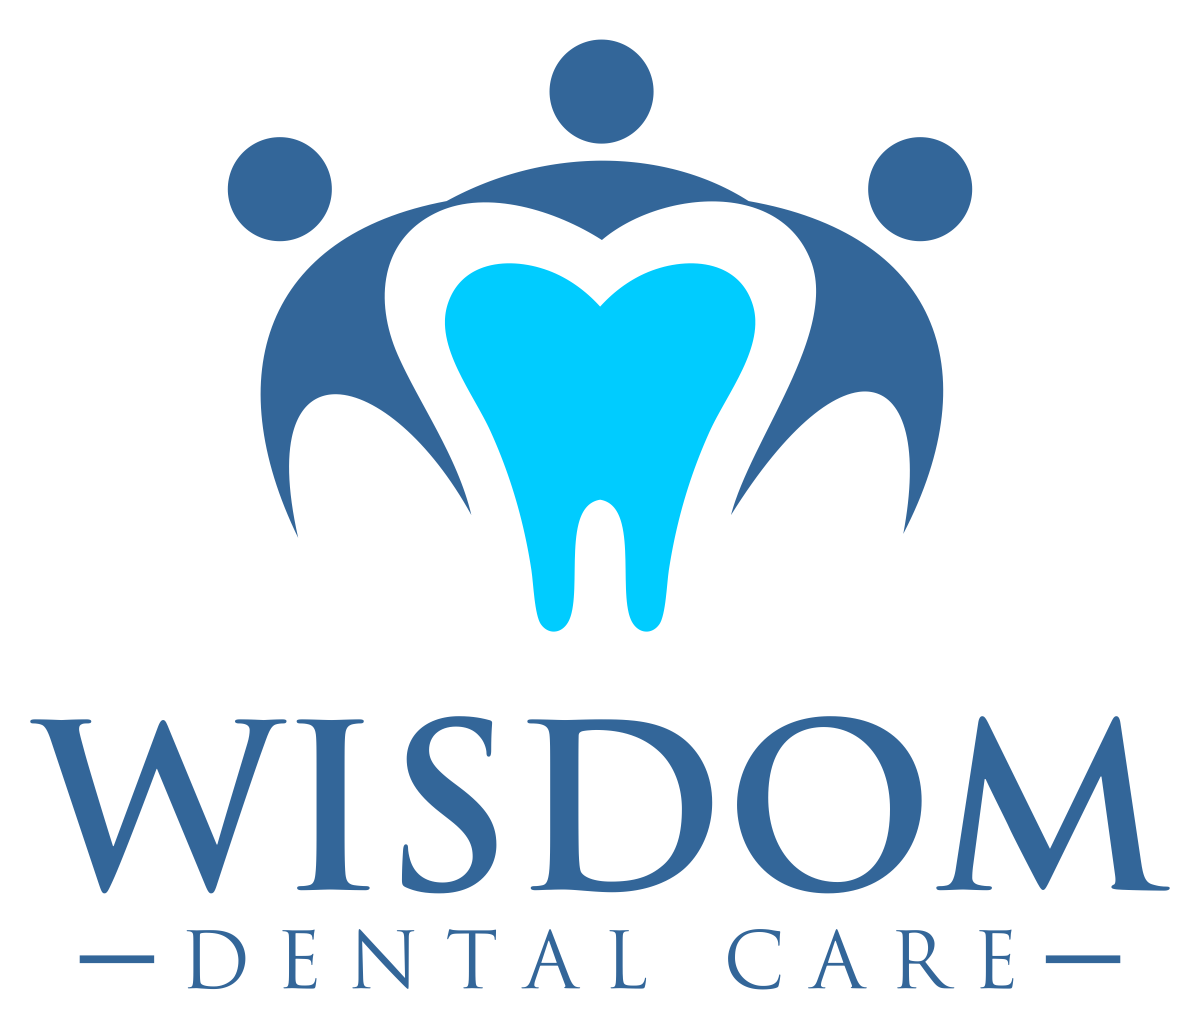 Wisdom Dental Care - Cairns Dentist